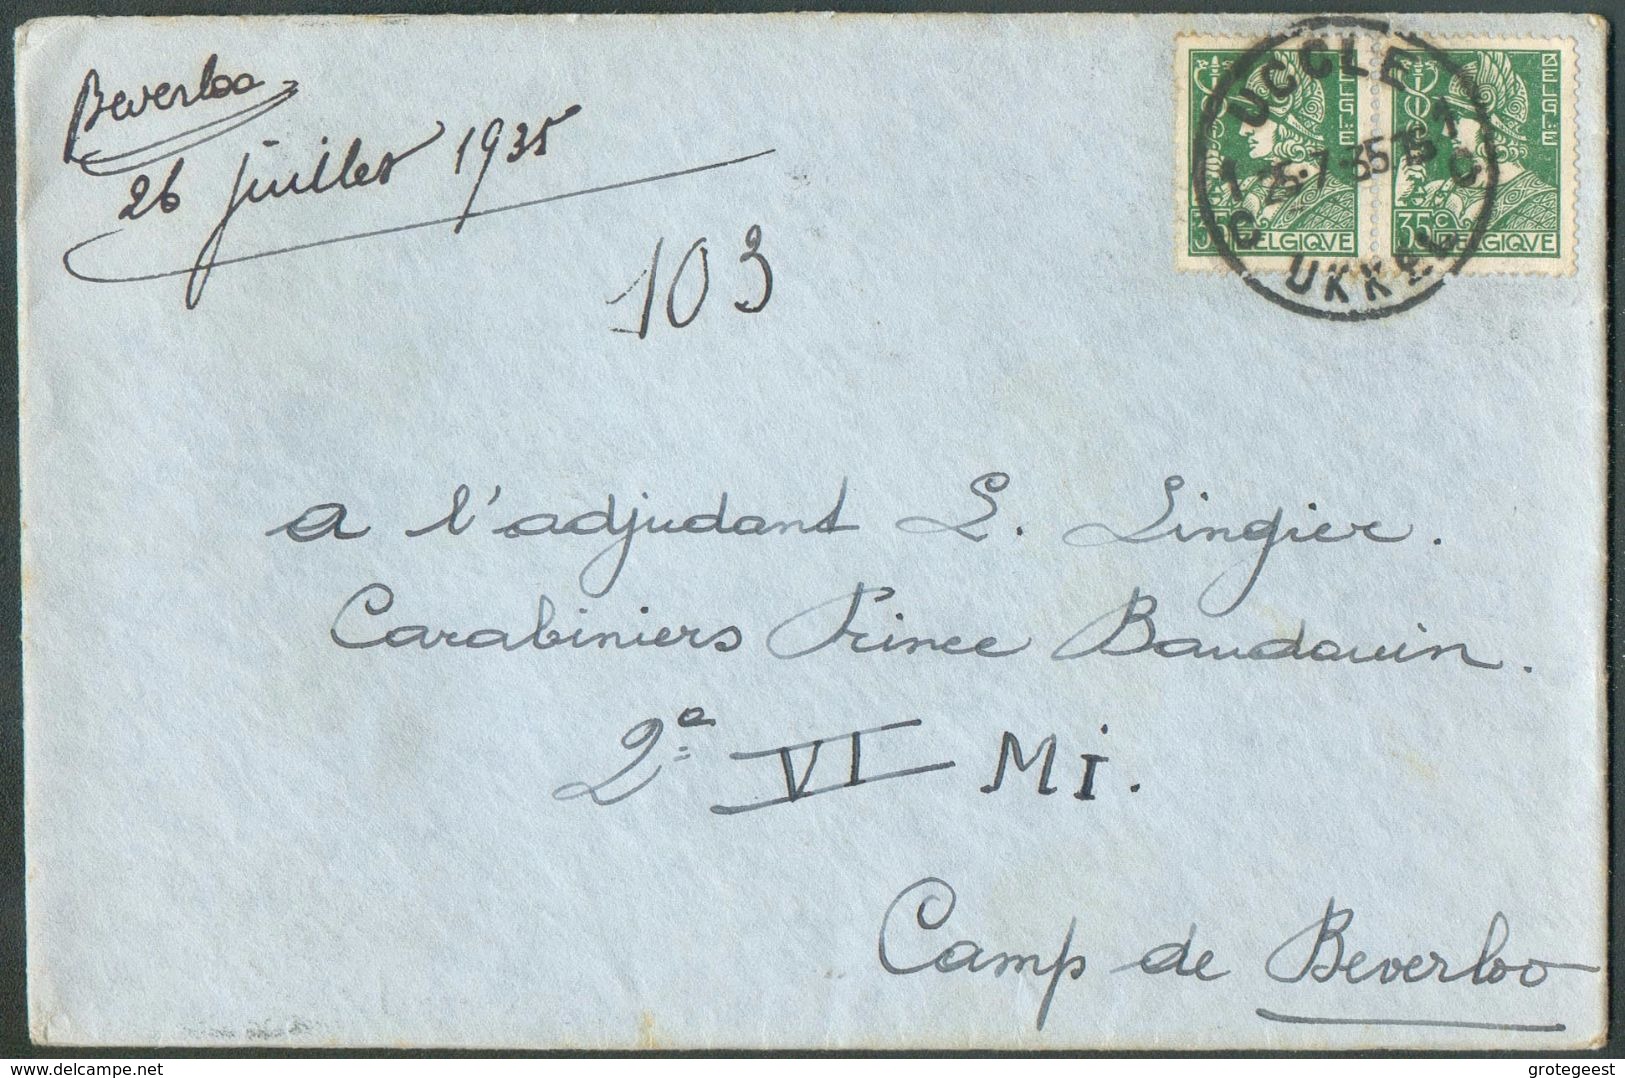 35 Cent. MERCURE (x2)  Obl. Sc DeUCCLE  Sur Lettre Du 25-7-1935 Vers Adjudant Lingier, Carabiniers Prince Baudouin 2è Au - 1932 Ceres Y Mercurio